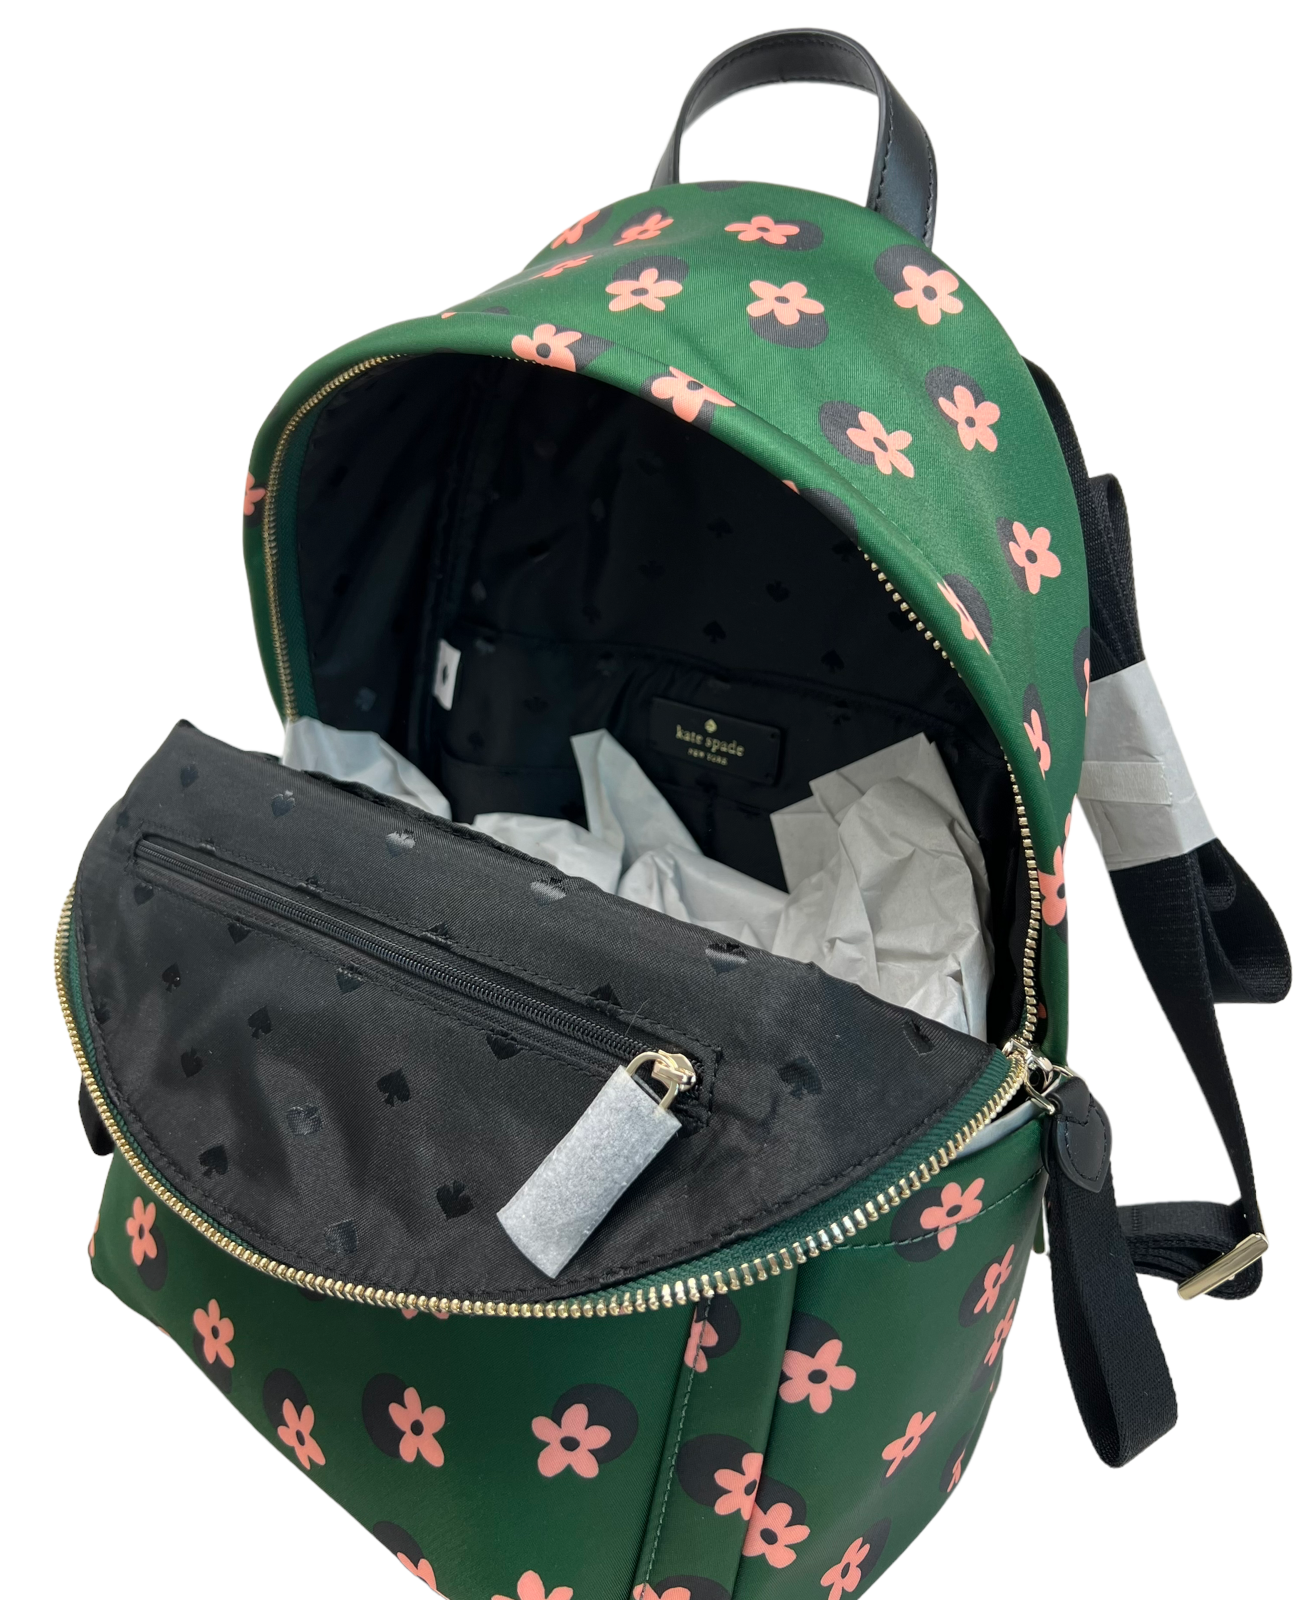 Kate Spade Chelsea Medium The Little Better Nylon Backpack Floral Green Multi